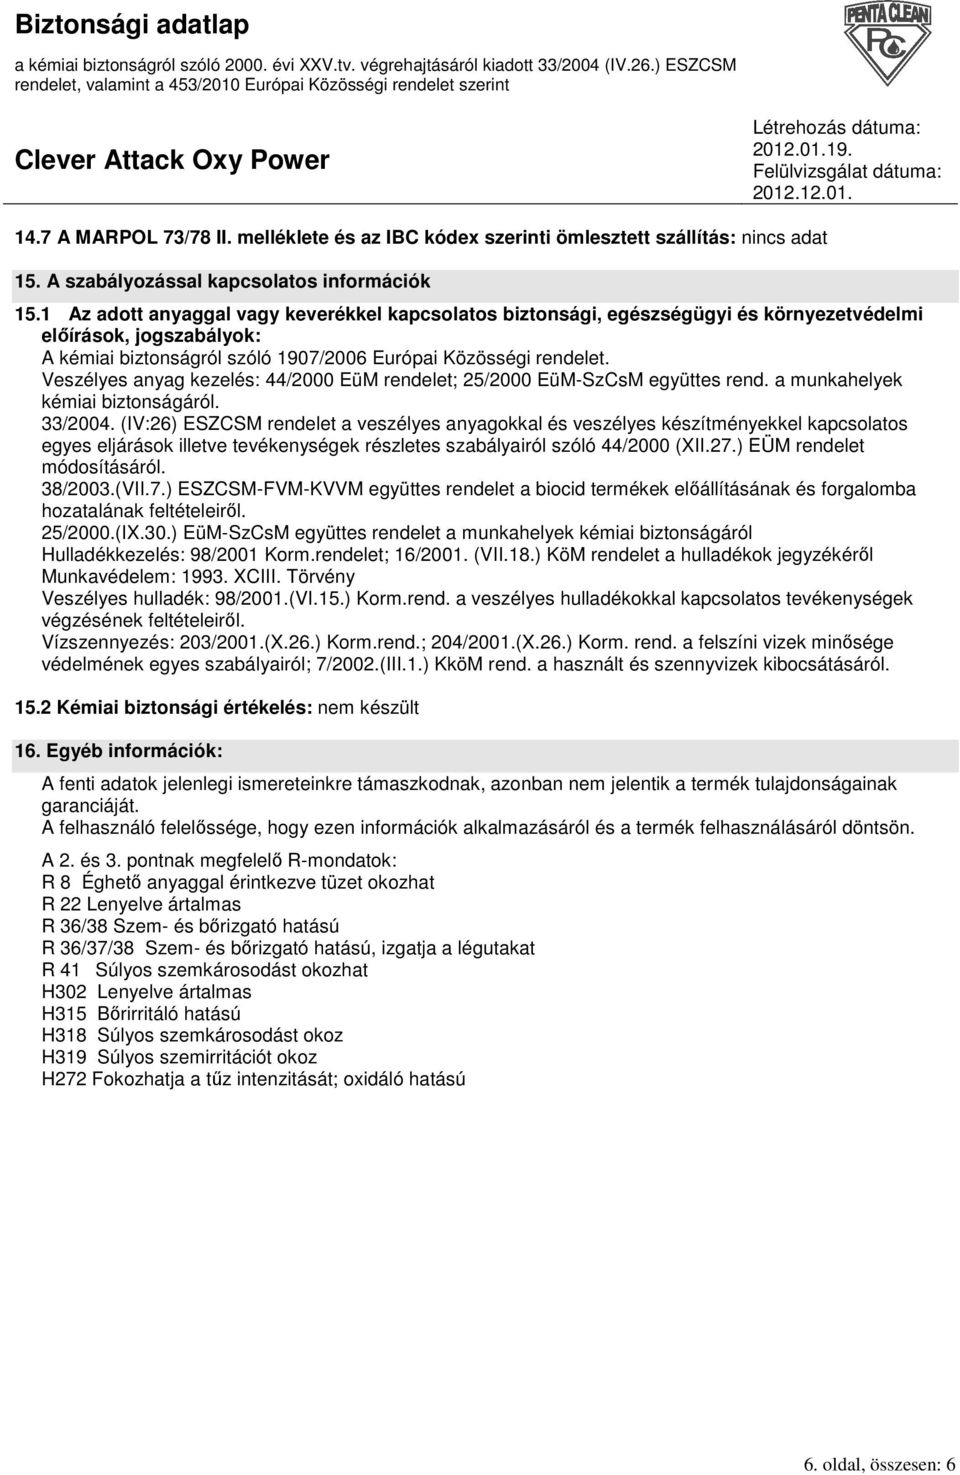 Veszélyes anyag kezelés: 44/2000 EüM rendelet; 25/2000 EüM-SzCsM együttes rend. a munkahelyek kémiai biztonságáról. 33/2004.